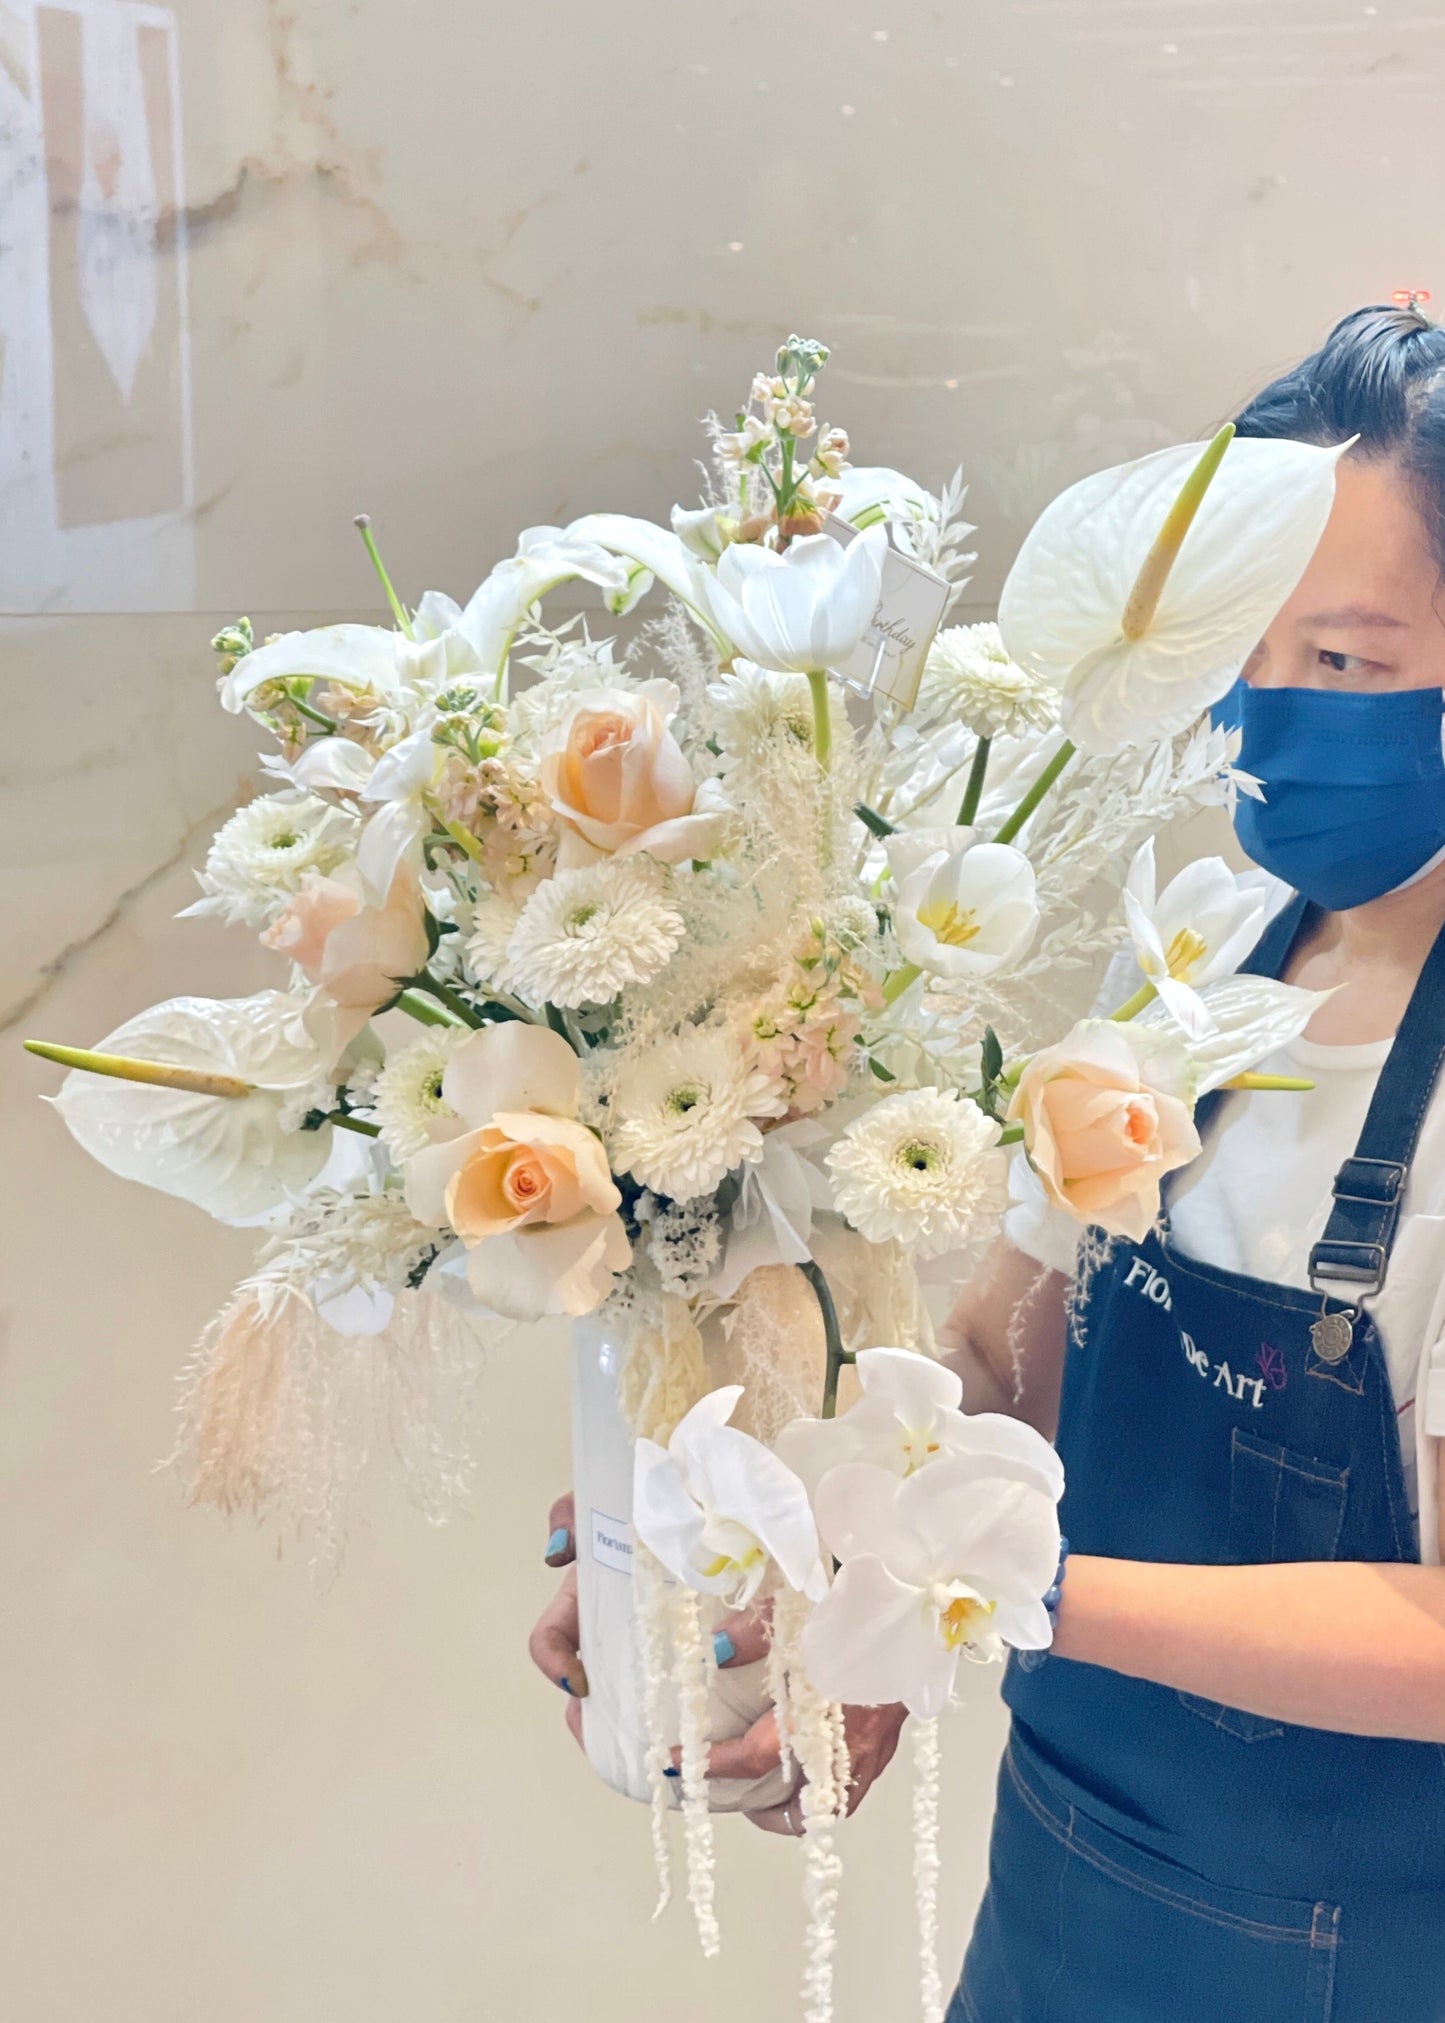 Angel's Dream | Vase Flower